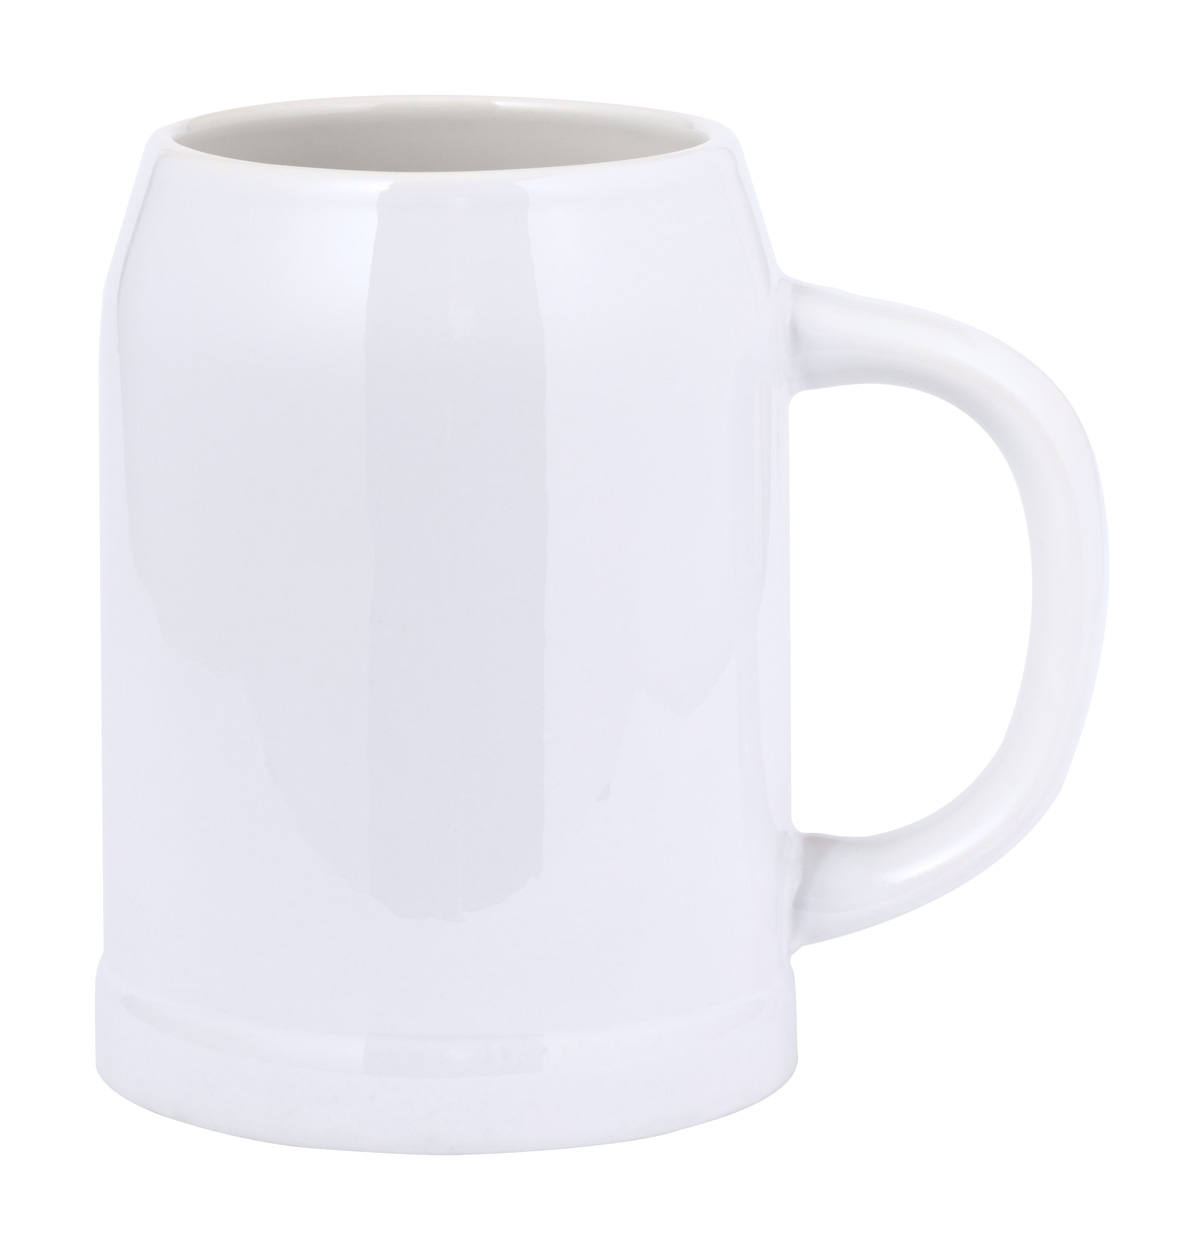 Heim mug for sublimation - white